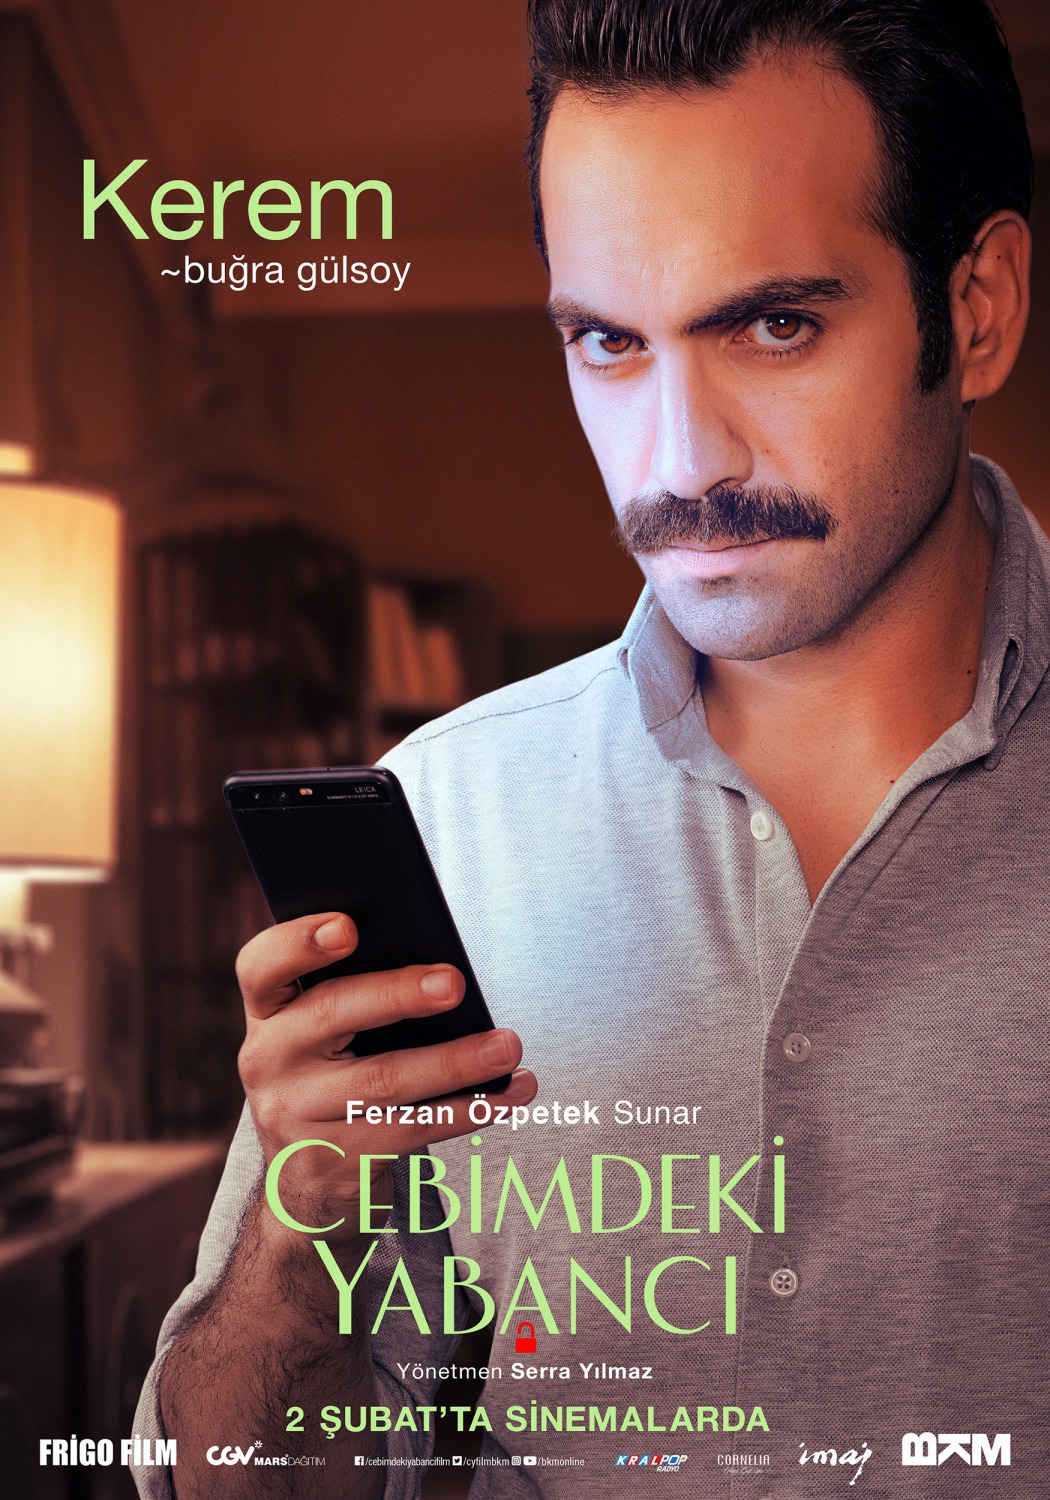 Extra Large Movie Poster Image for Cebimdeki Yabancı (#7 of 10)